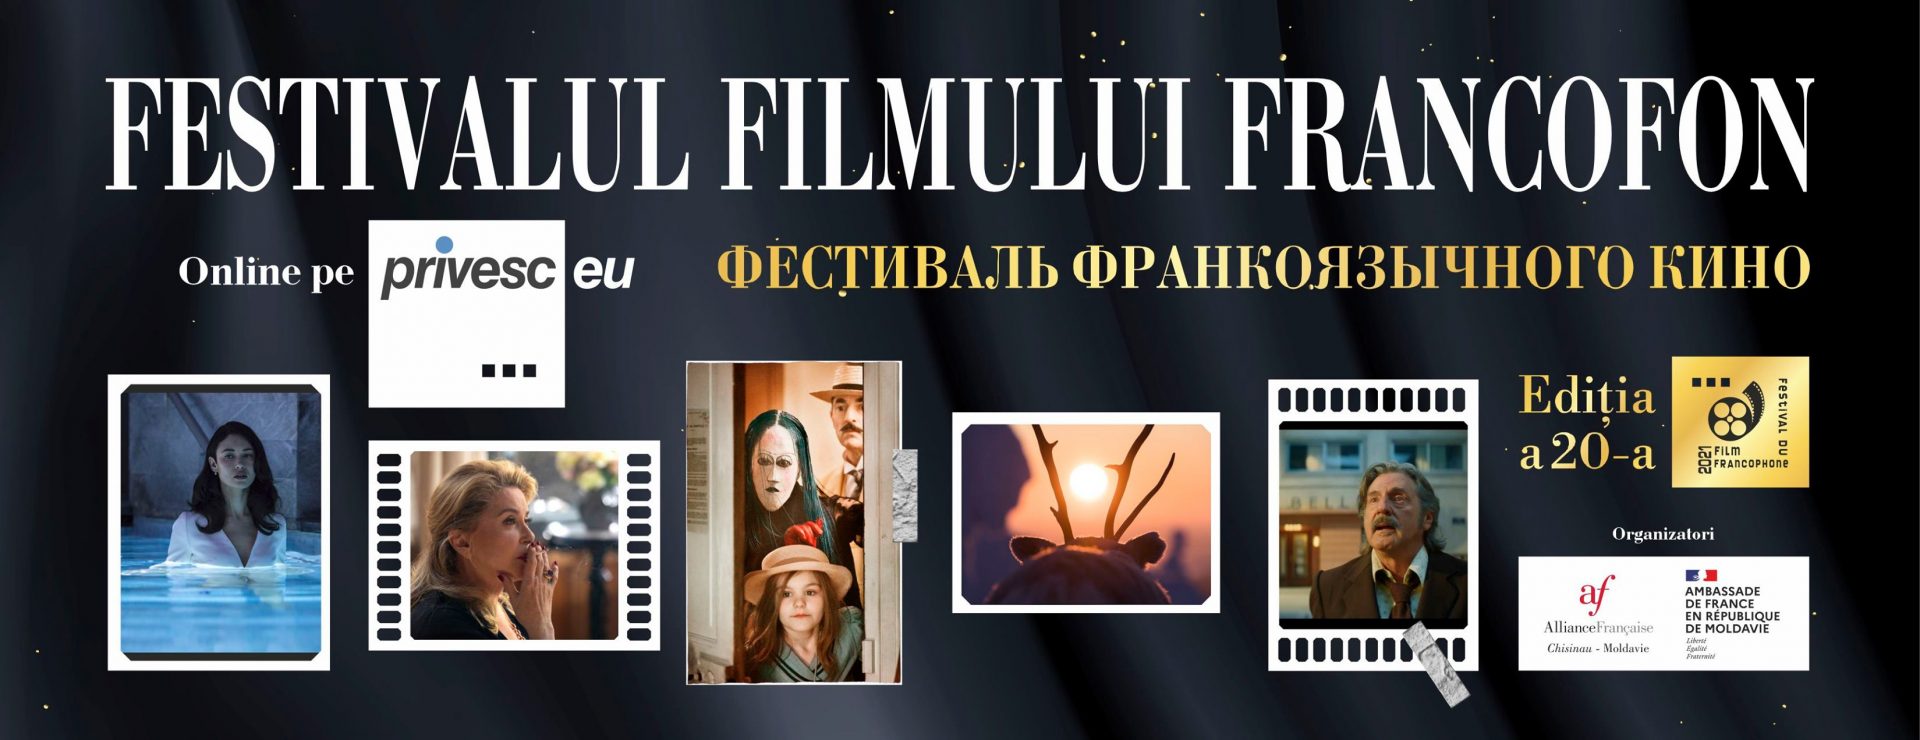 Festivalul Filmului Francofon